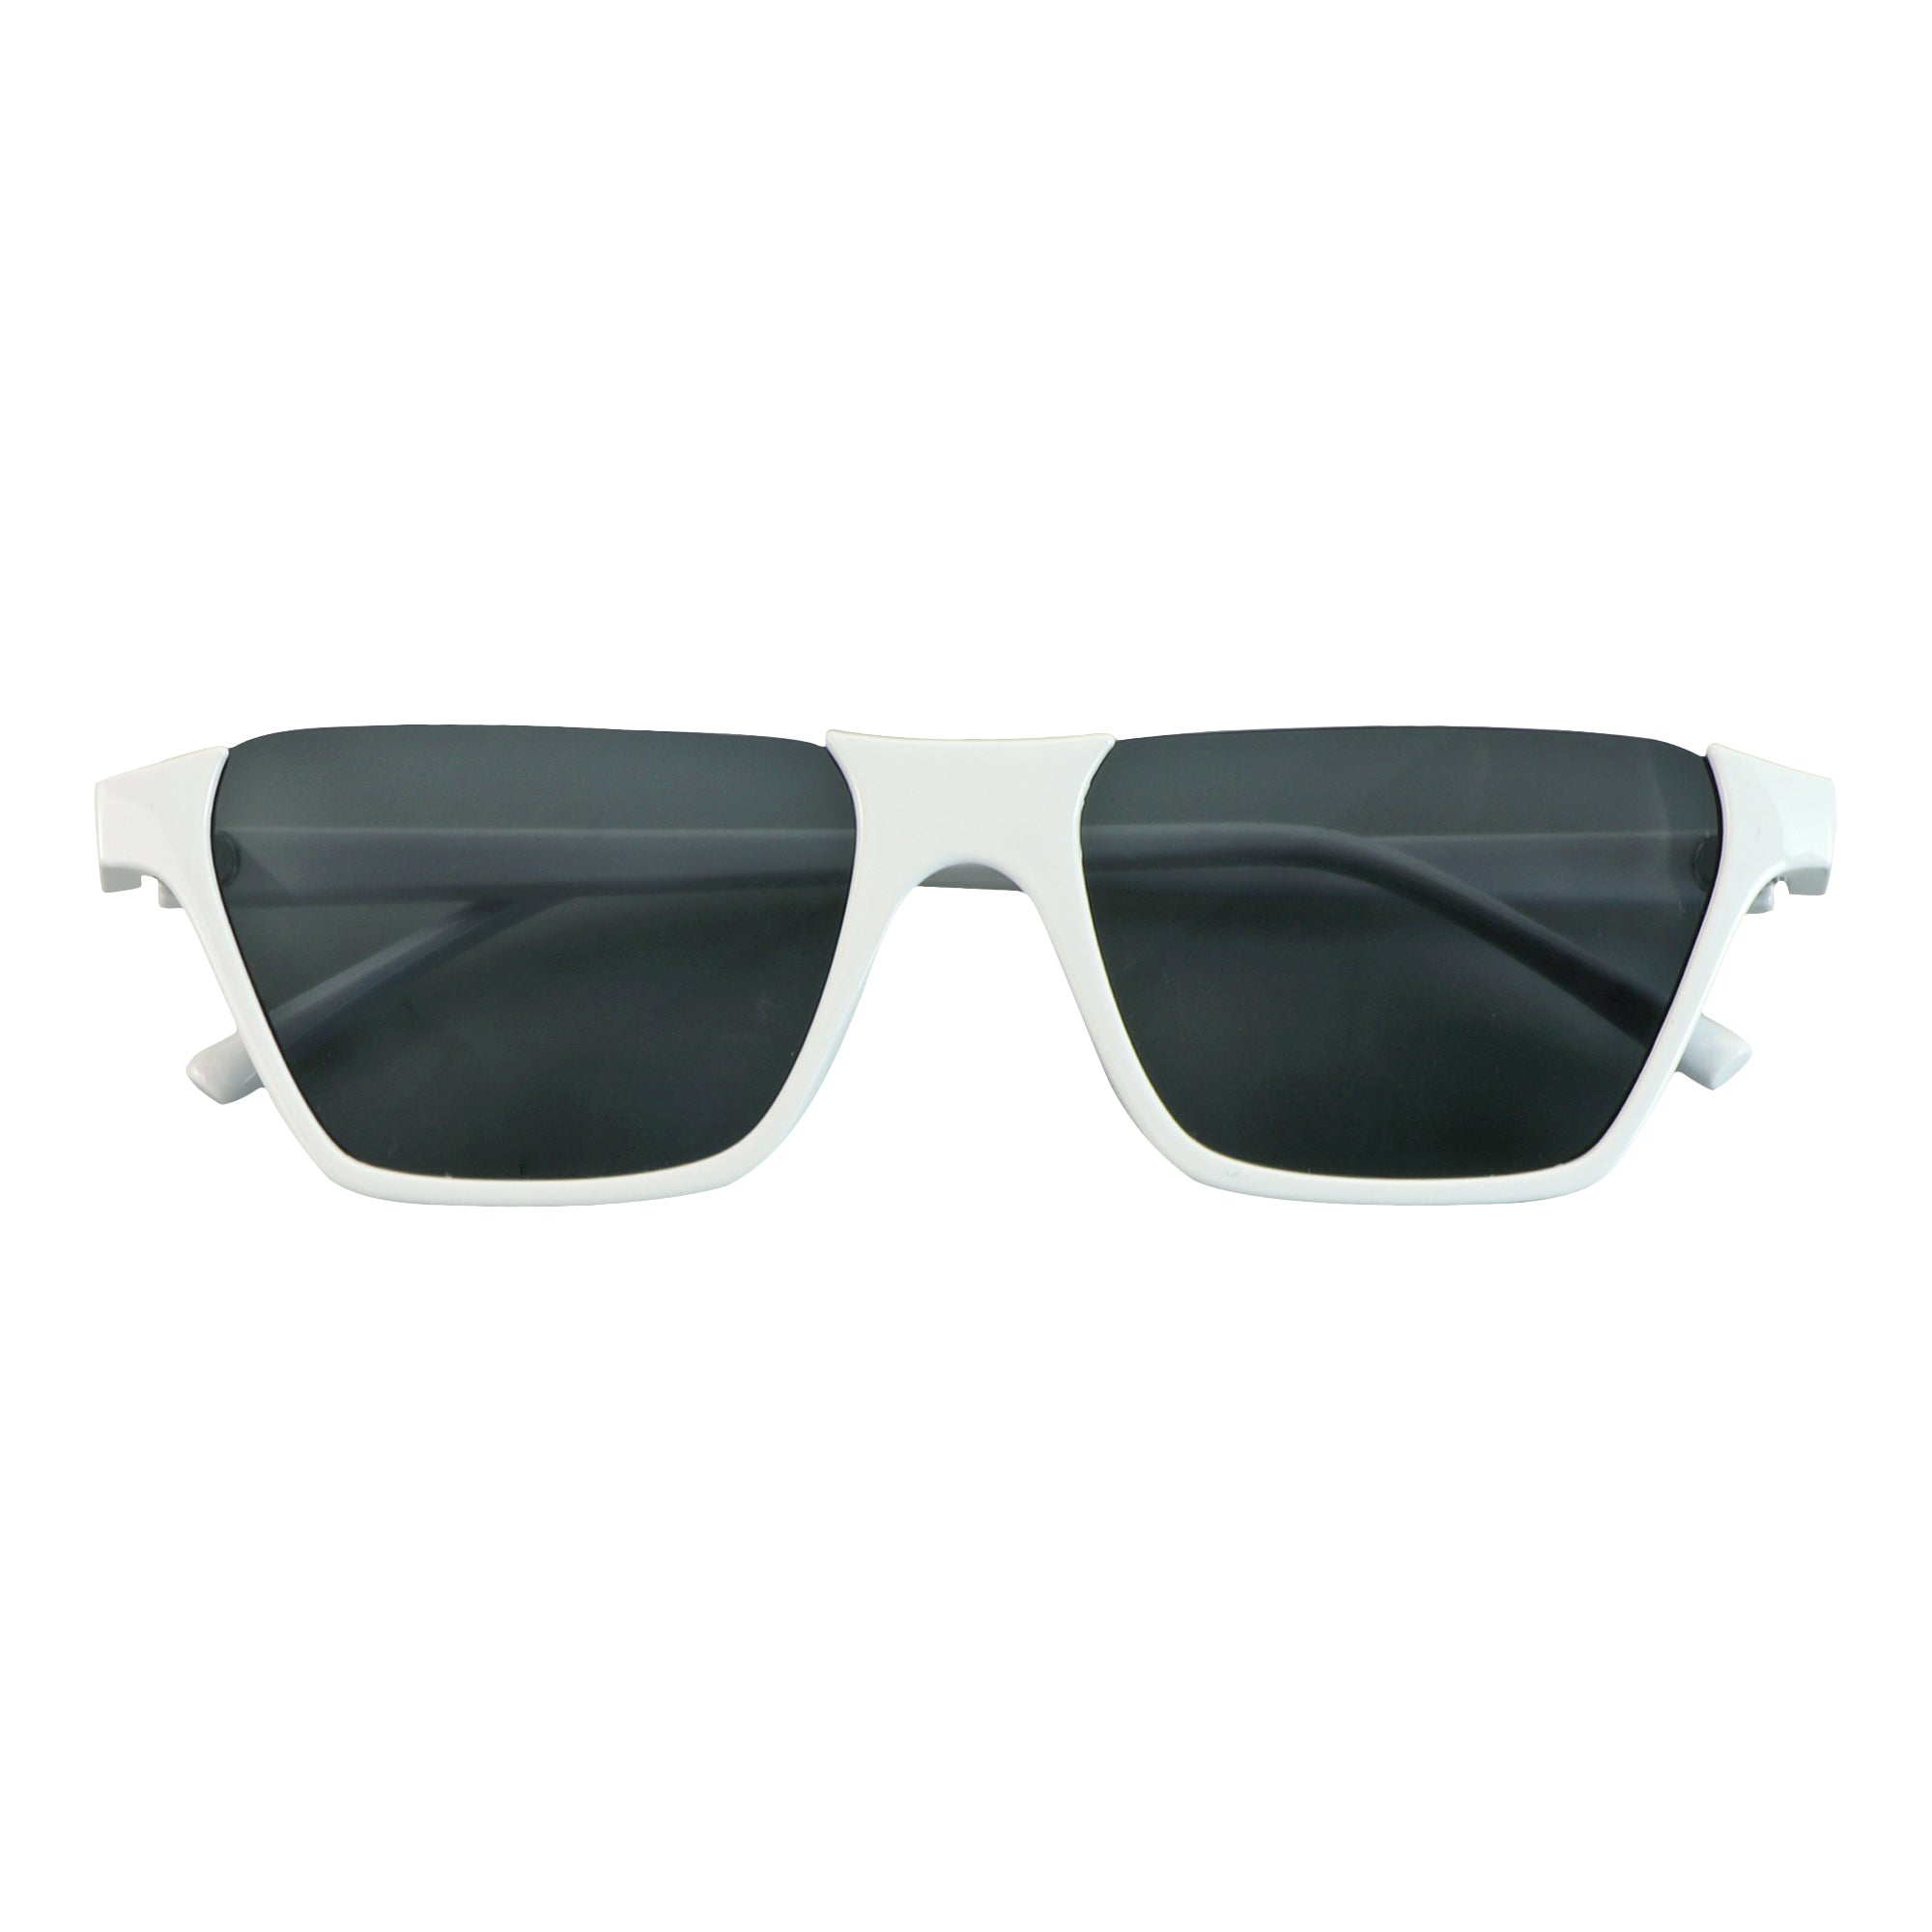 GM The Same Fashion Square Frame Sunglasses Women's Senior Sense